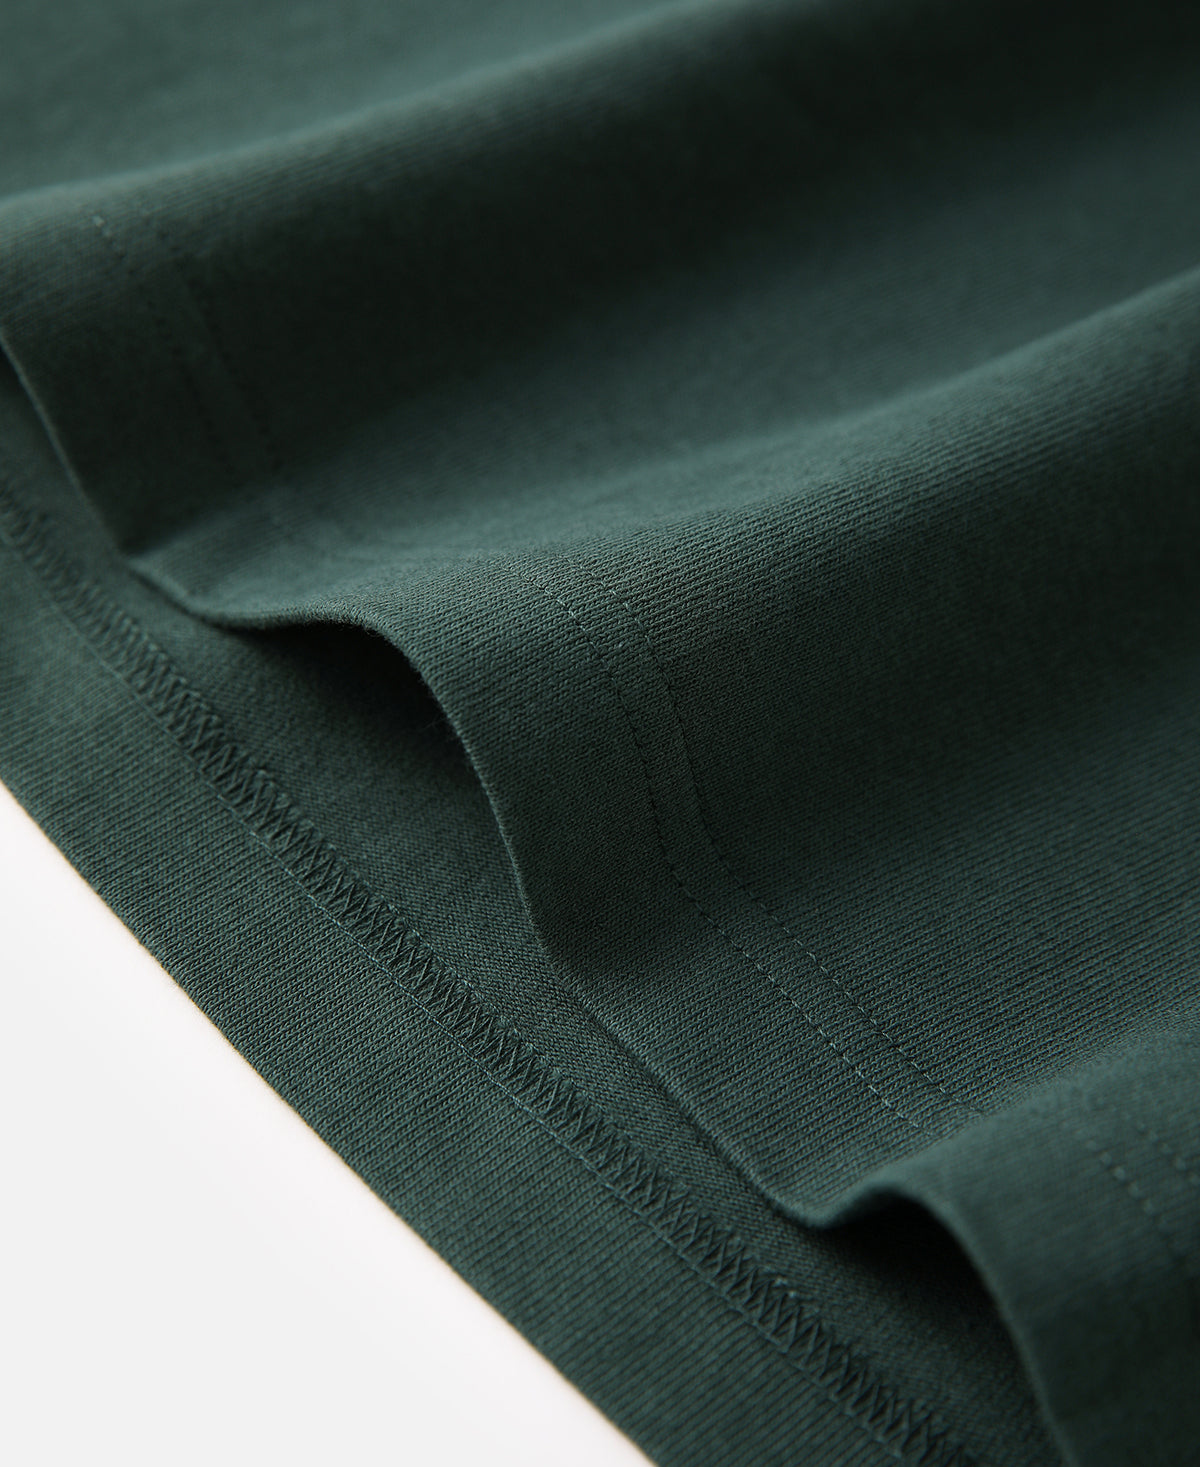 9 oz US Cotton Tubular T-Shirt - Dark Green